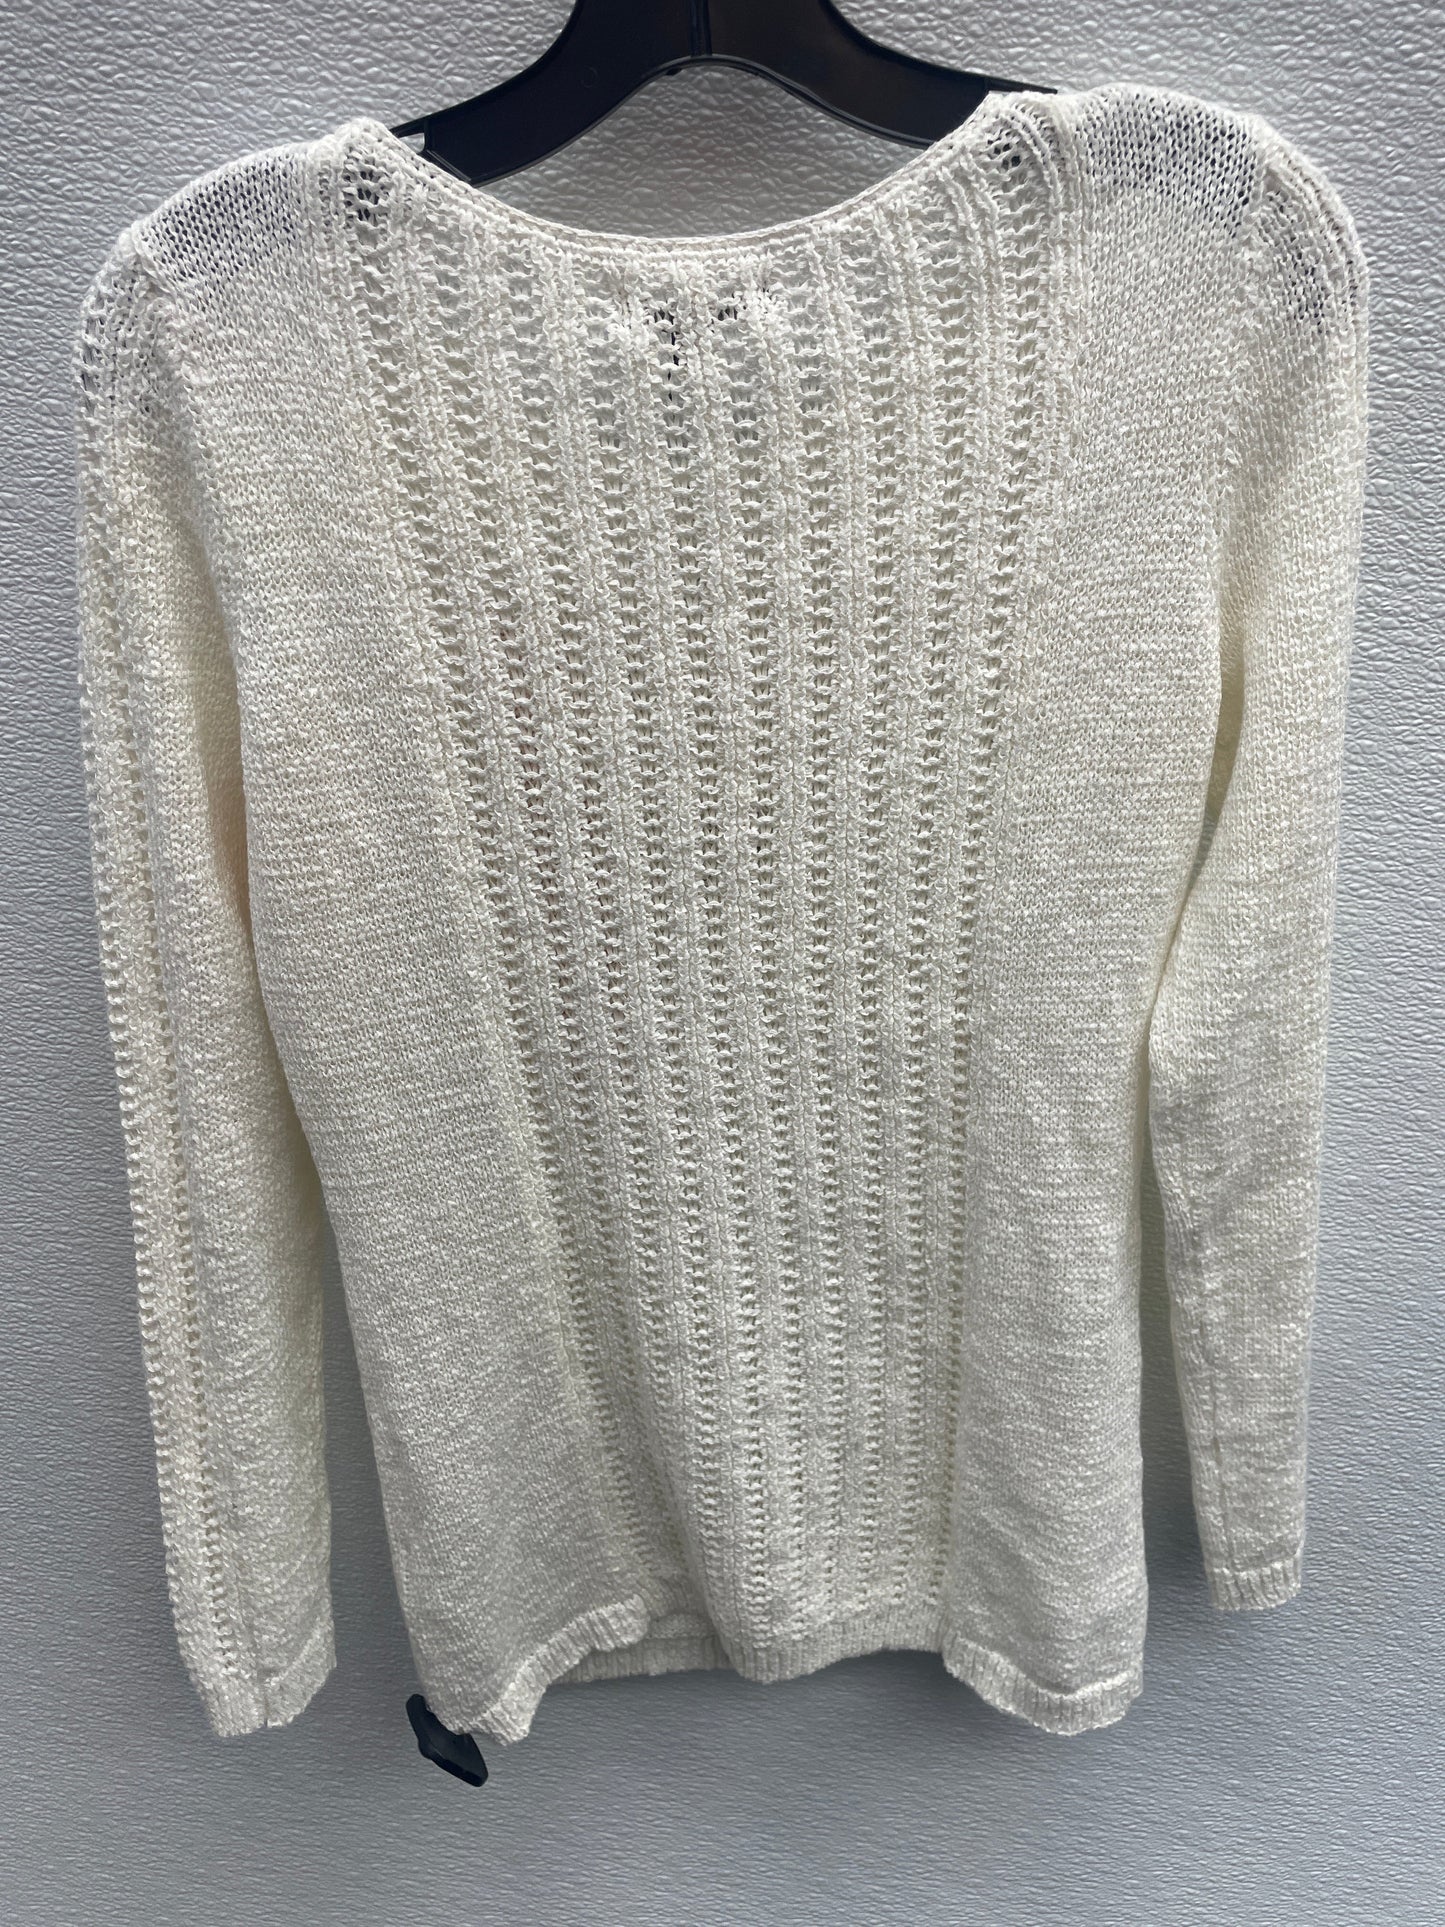 Sweater By Rachel Zoe  Size: M